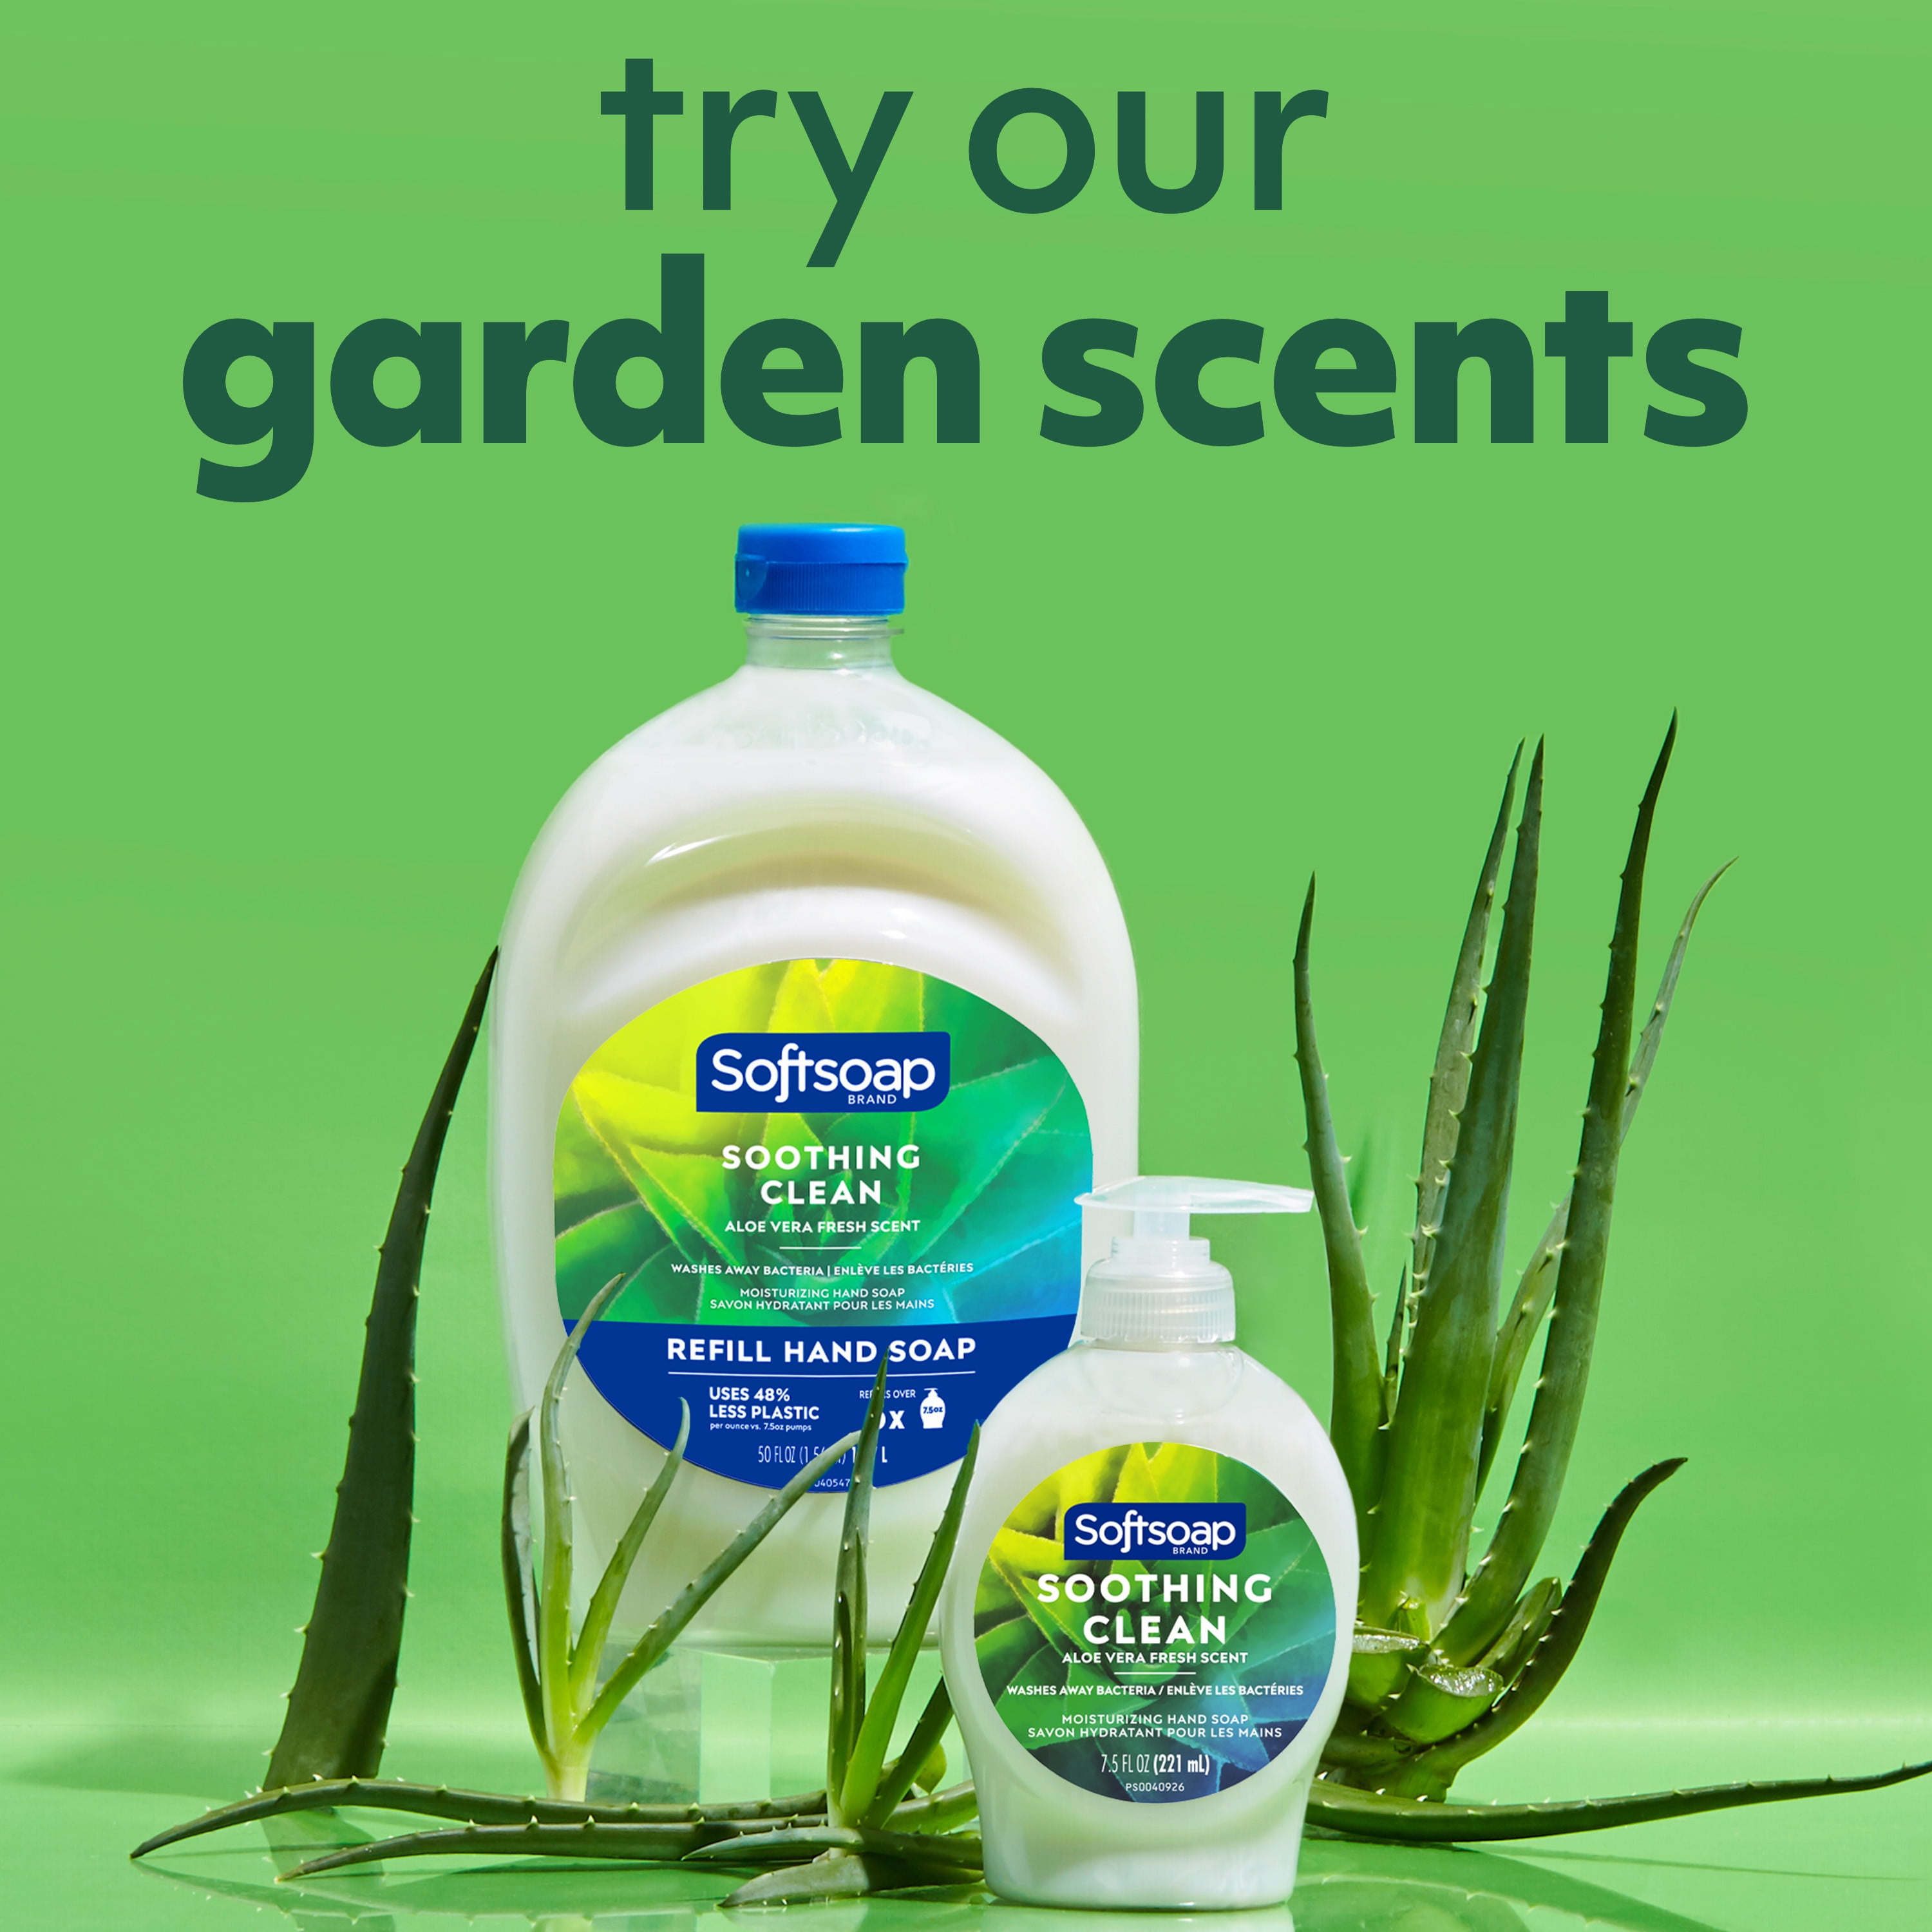 Aloe Vera sensitive liquid Detergent Eco-Refill